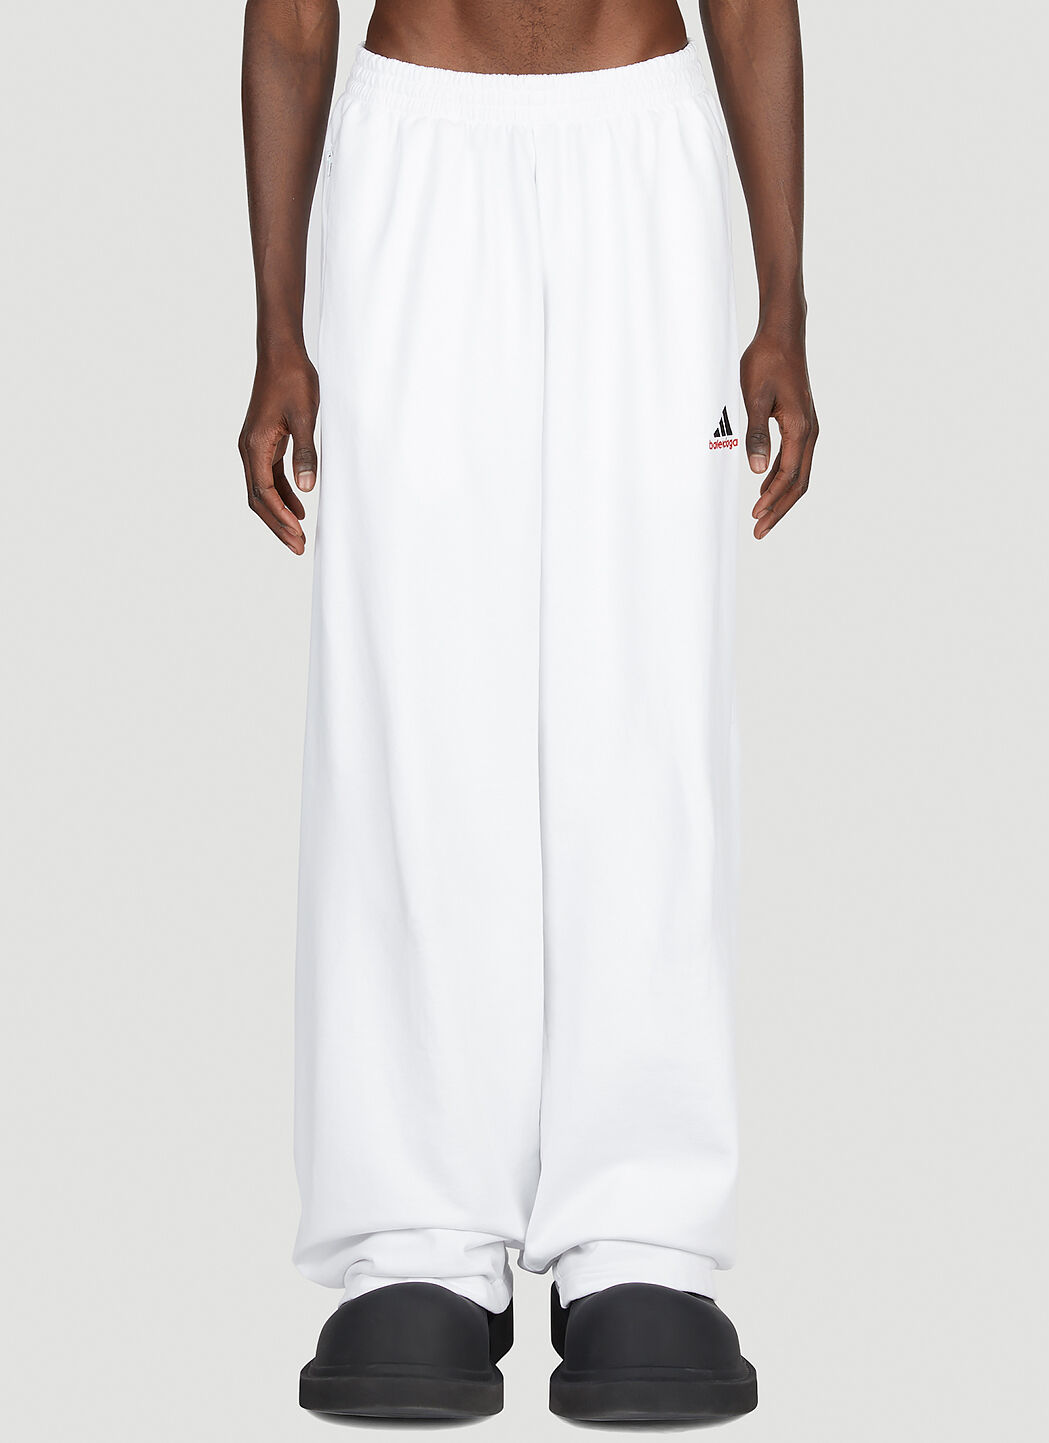 Balenciaga x adidas 刺绣徽标运动裤 白色 axb0151027